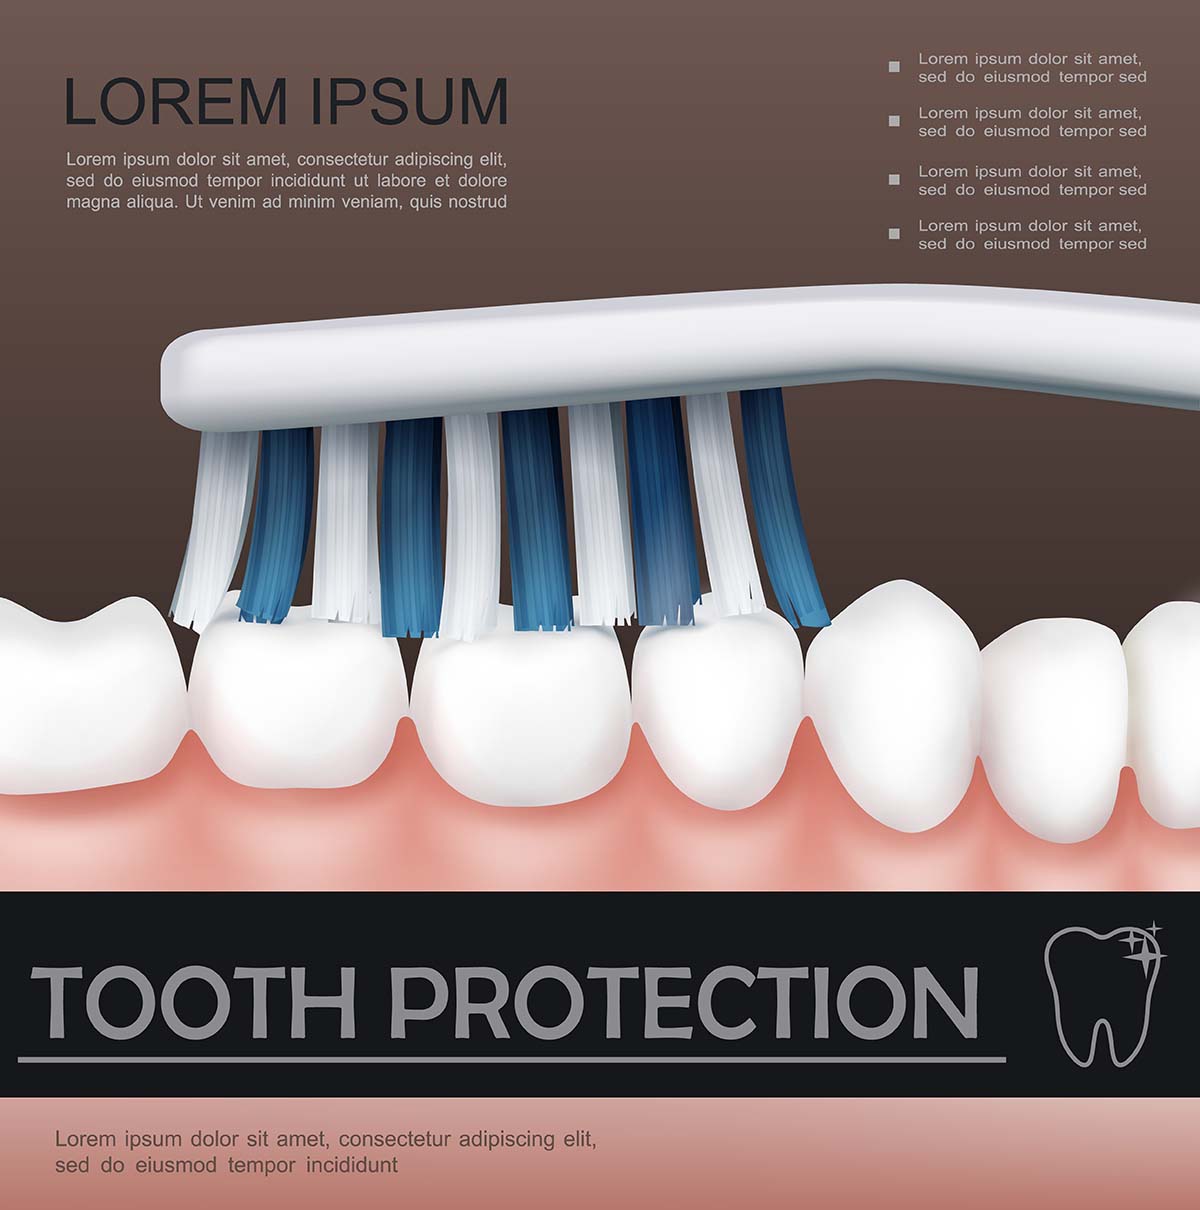 牙齿护理丰富多彩的概念与健康刷牙过程的写实风格海报设计